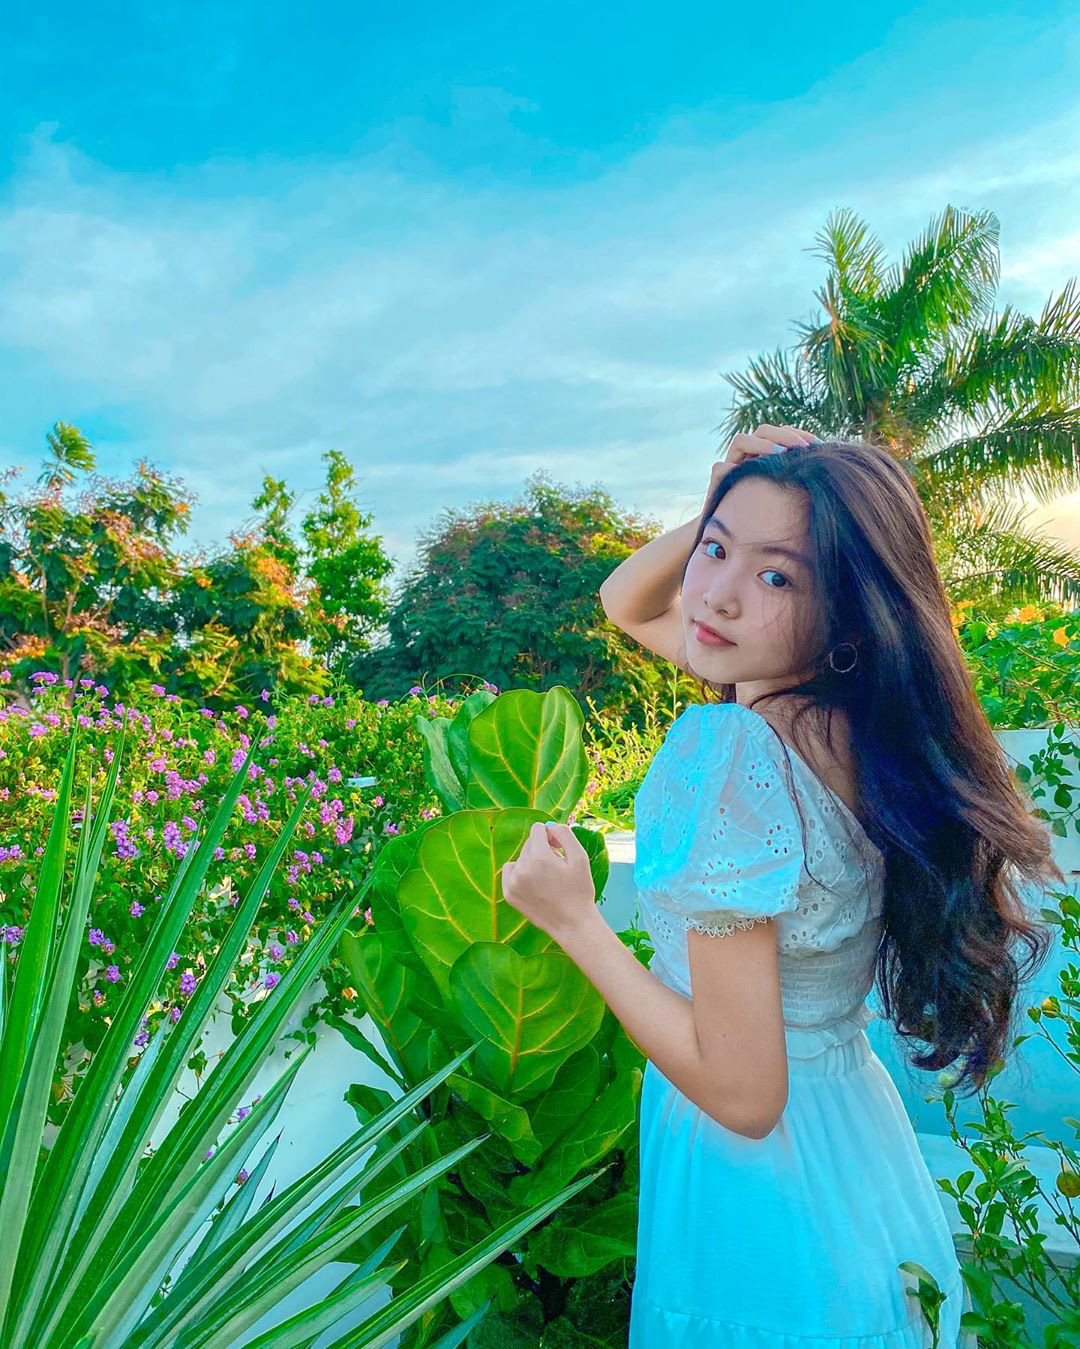 Vẻ đẹp xinh đẹp của gái Việt luôn làm say mê mọi ánh nhìn. Chụp ảnh với gái xinh sẽ đưa bạn đến những khu vực đẹp nhất của Việt Nam, để tận hưởng sự thanh thản và tràn đầy năng lượng các cô gái đem lại.